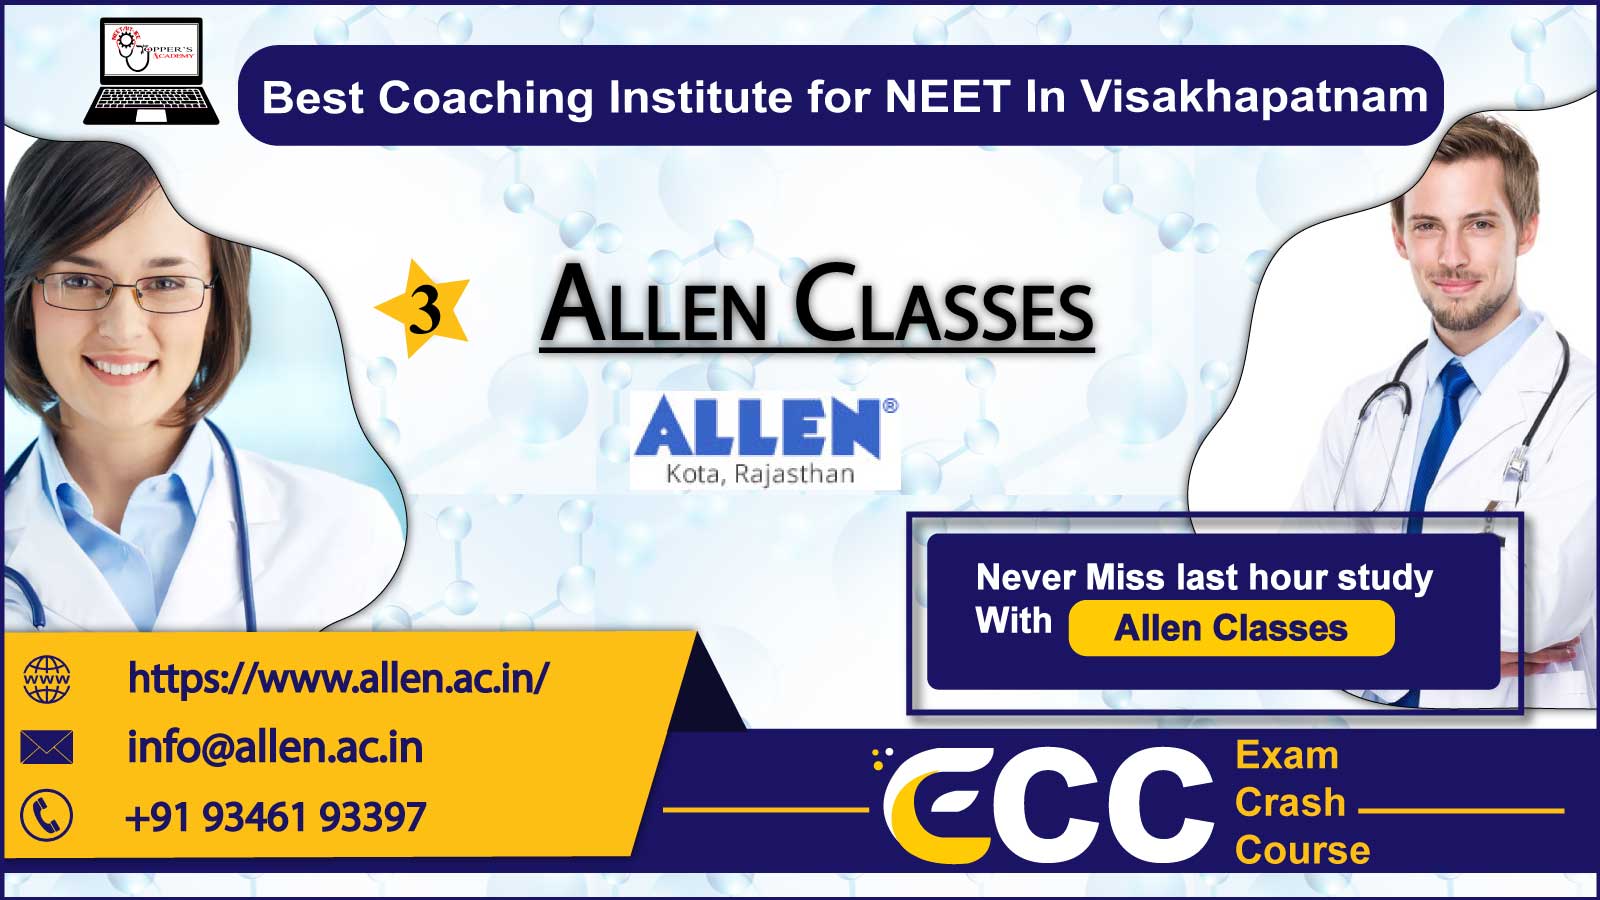 Allen NEET Classes in Visakhapatnam